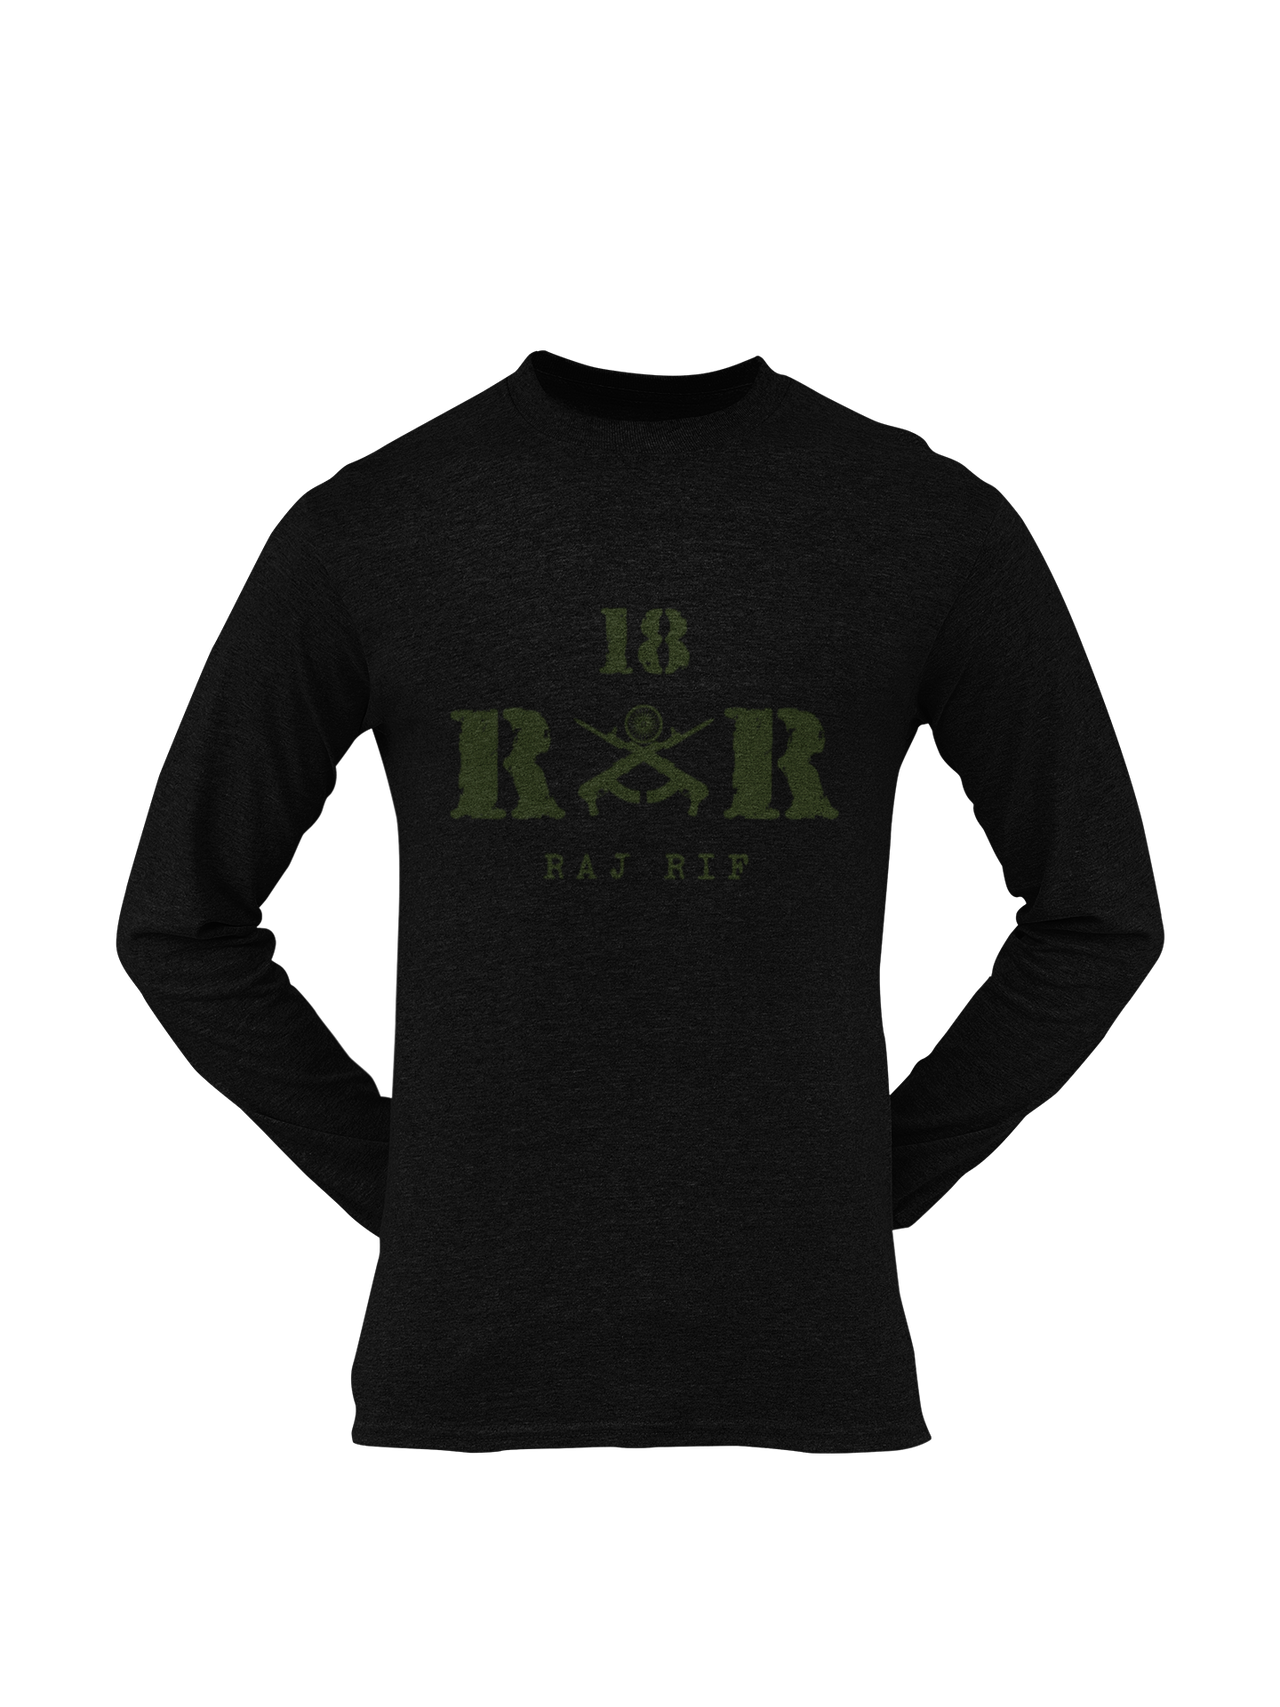 Rashtriya Rifles T-shirt - 18 RR Raj Rif (Men)